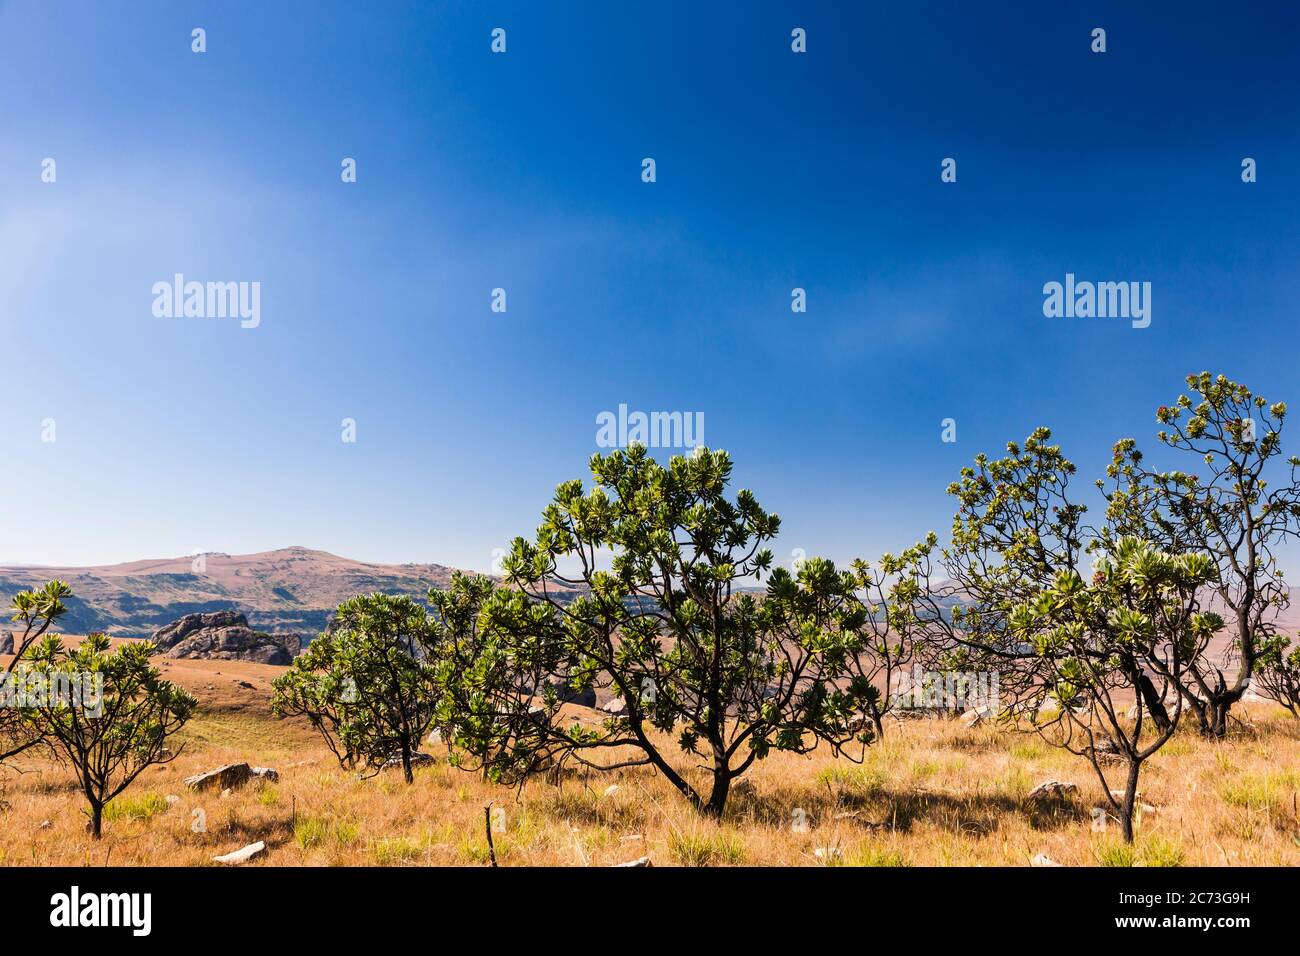 Protea Trees, Drakensberg, près du col Sani, région sauvage de Mkhomazi, KwaZulu-Natal, Afrique du Sud, Afrique Banque D'Images